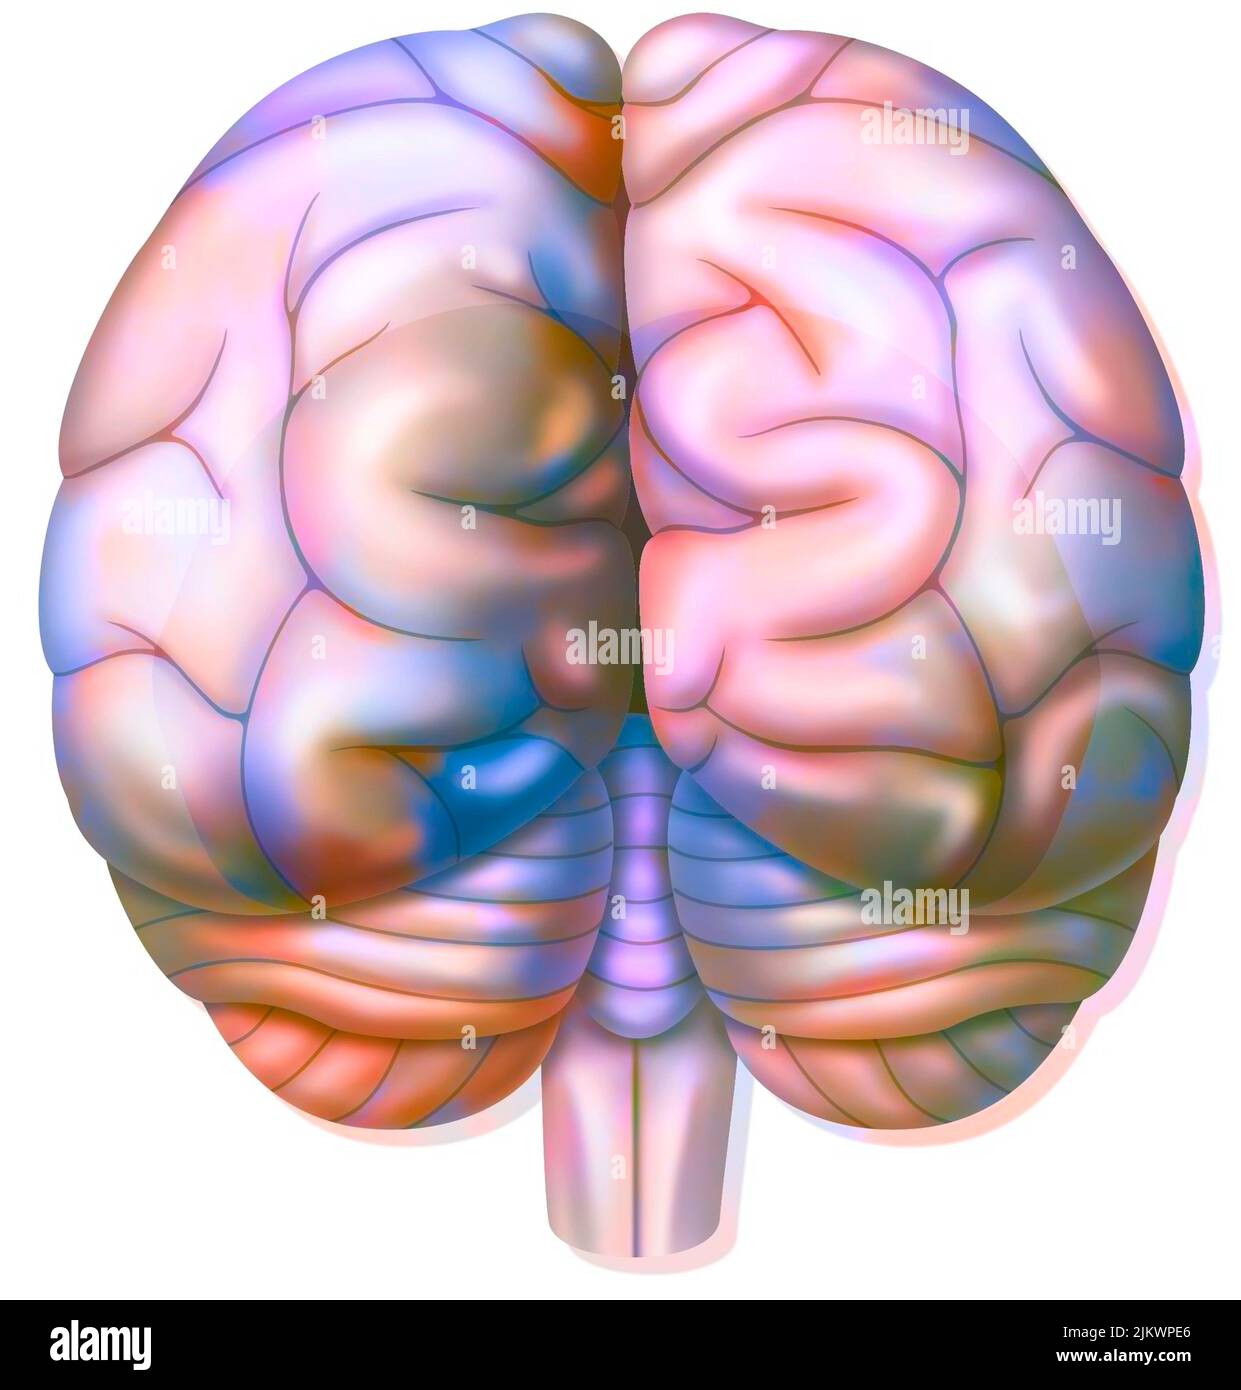 Die Hinterhauptlappen des Gehirns in der hinteren Ansicht. Stockfoto